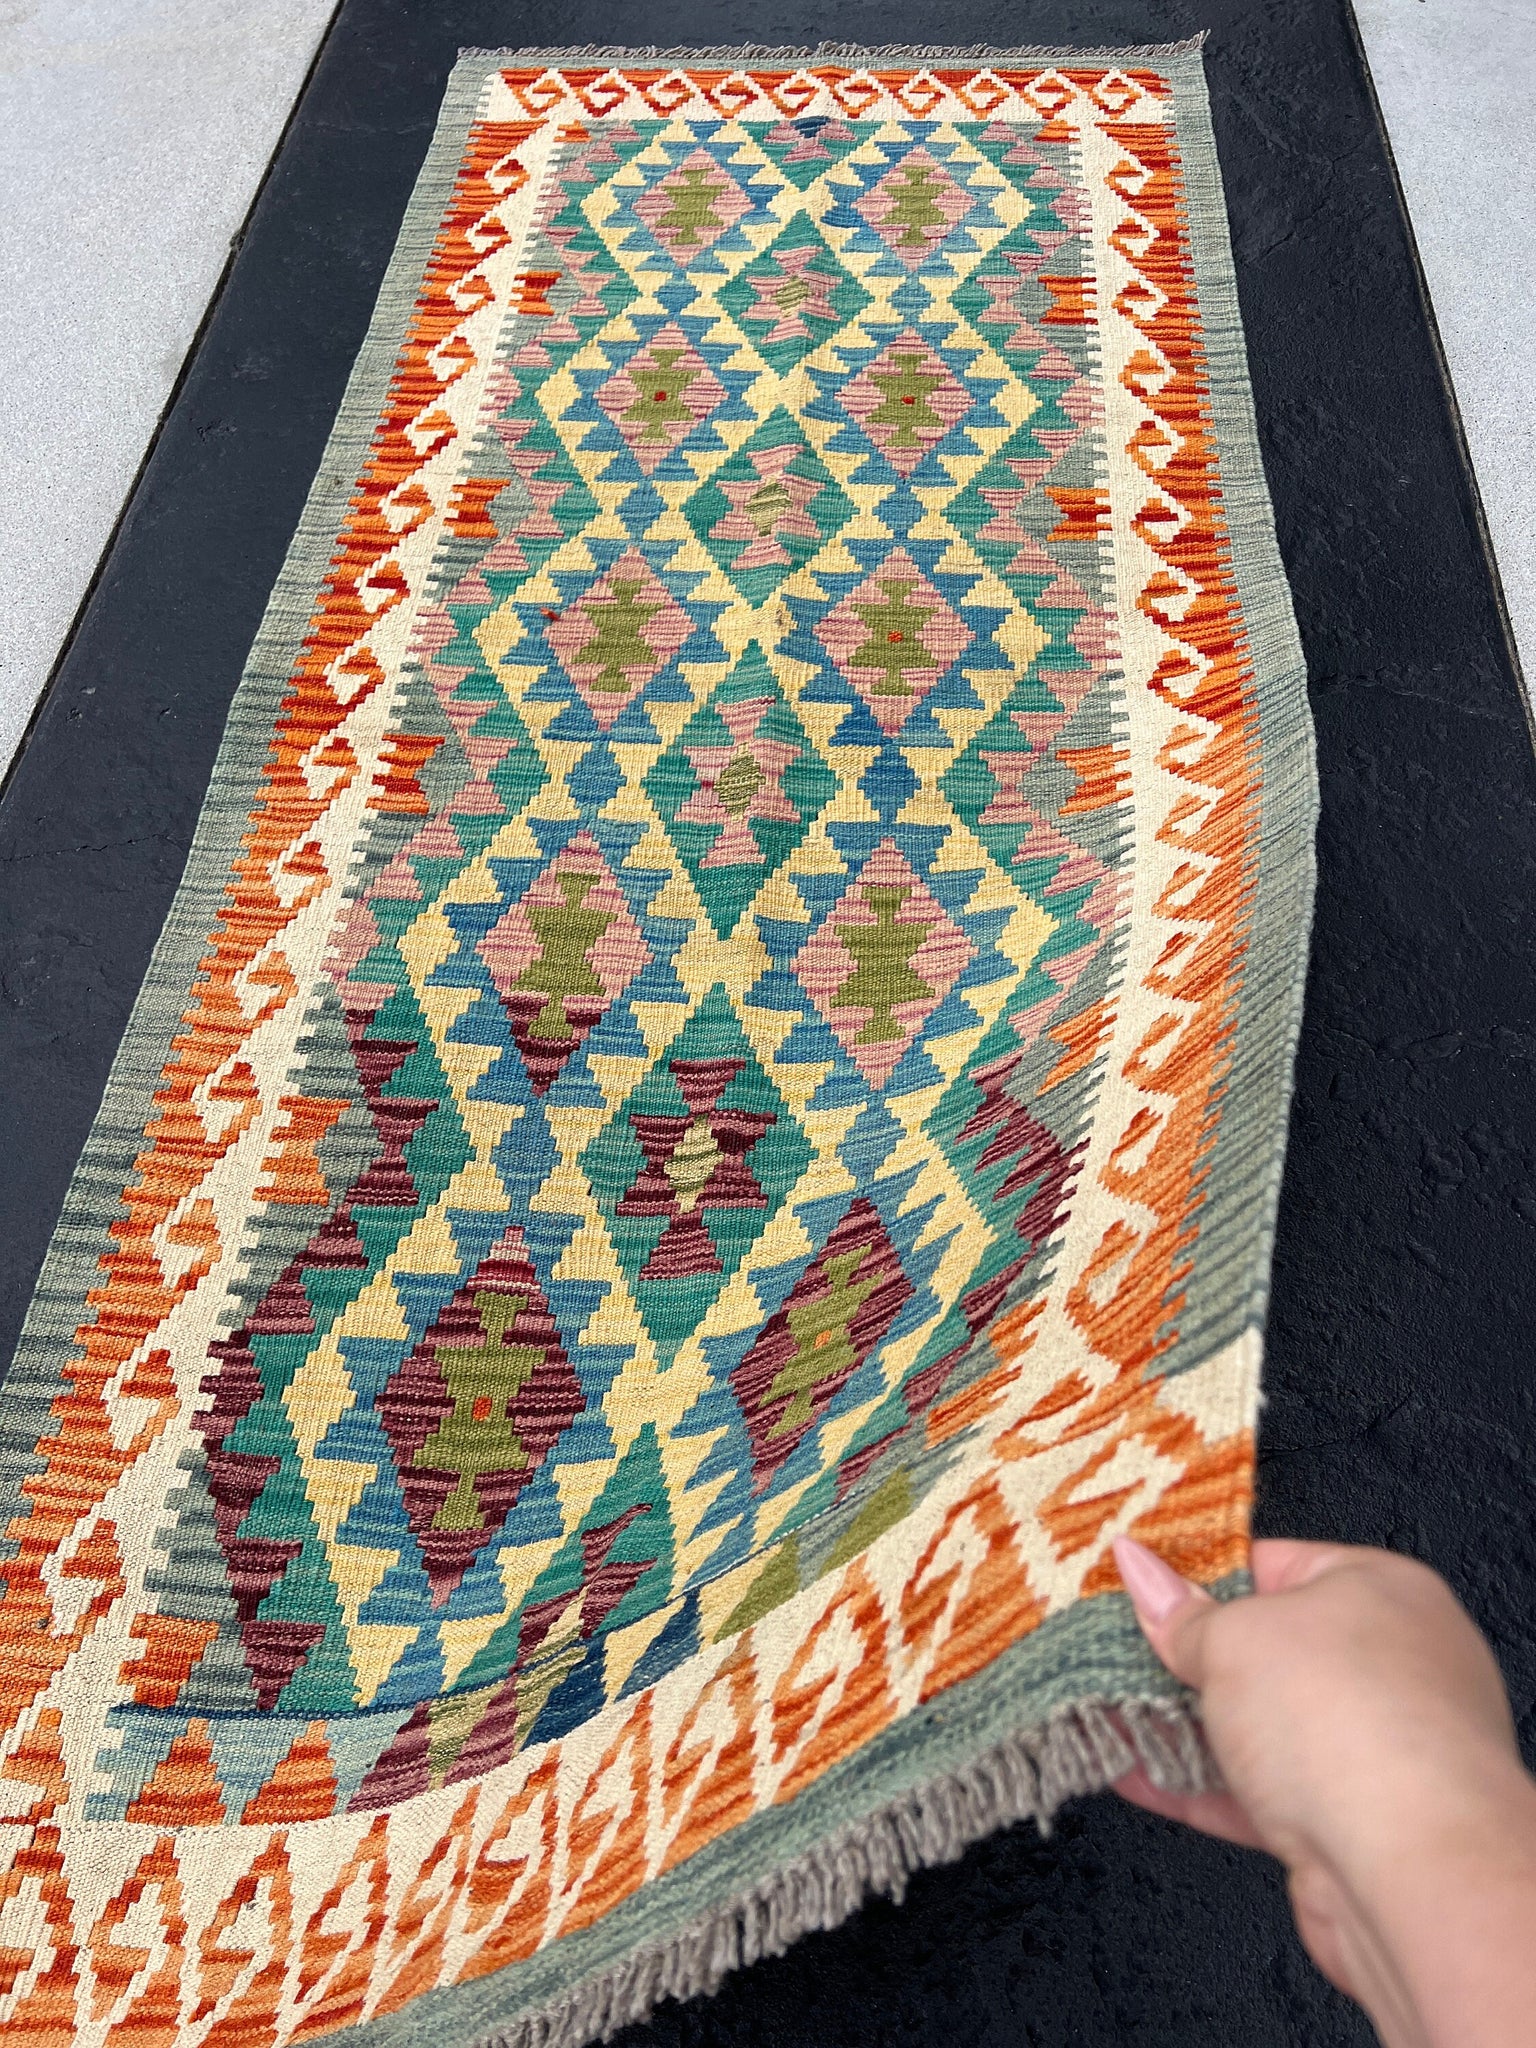 3x7 (100x200) Handmade Afghan Kilim Runner Rug | Sage Grey Burnt Orange Denim Blue Teal Cornsilk Cream Beige Purple Pink | Wool